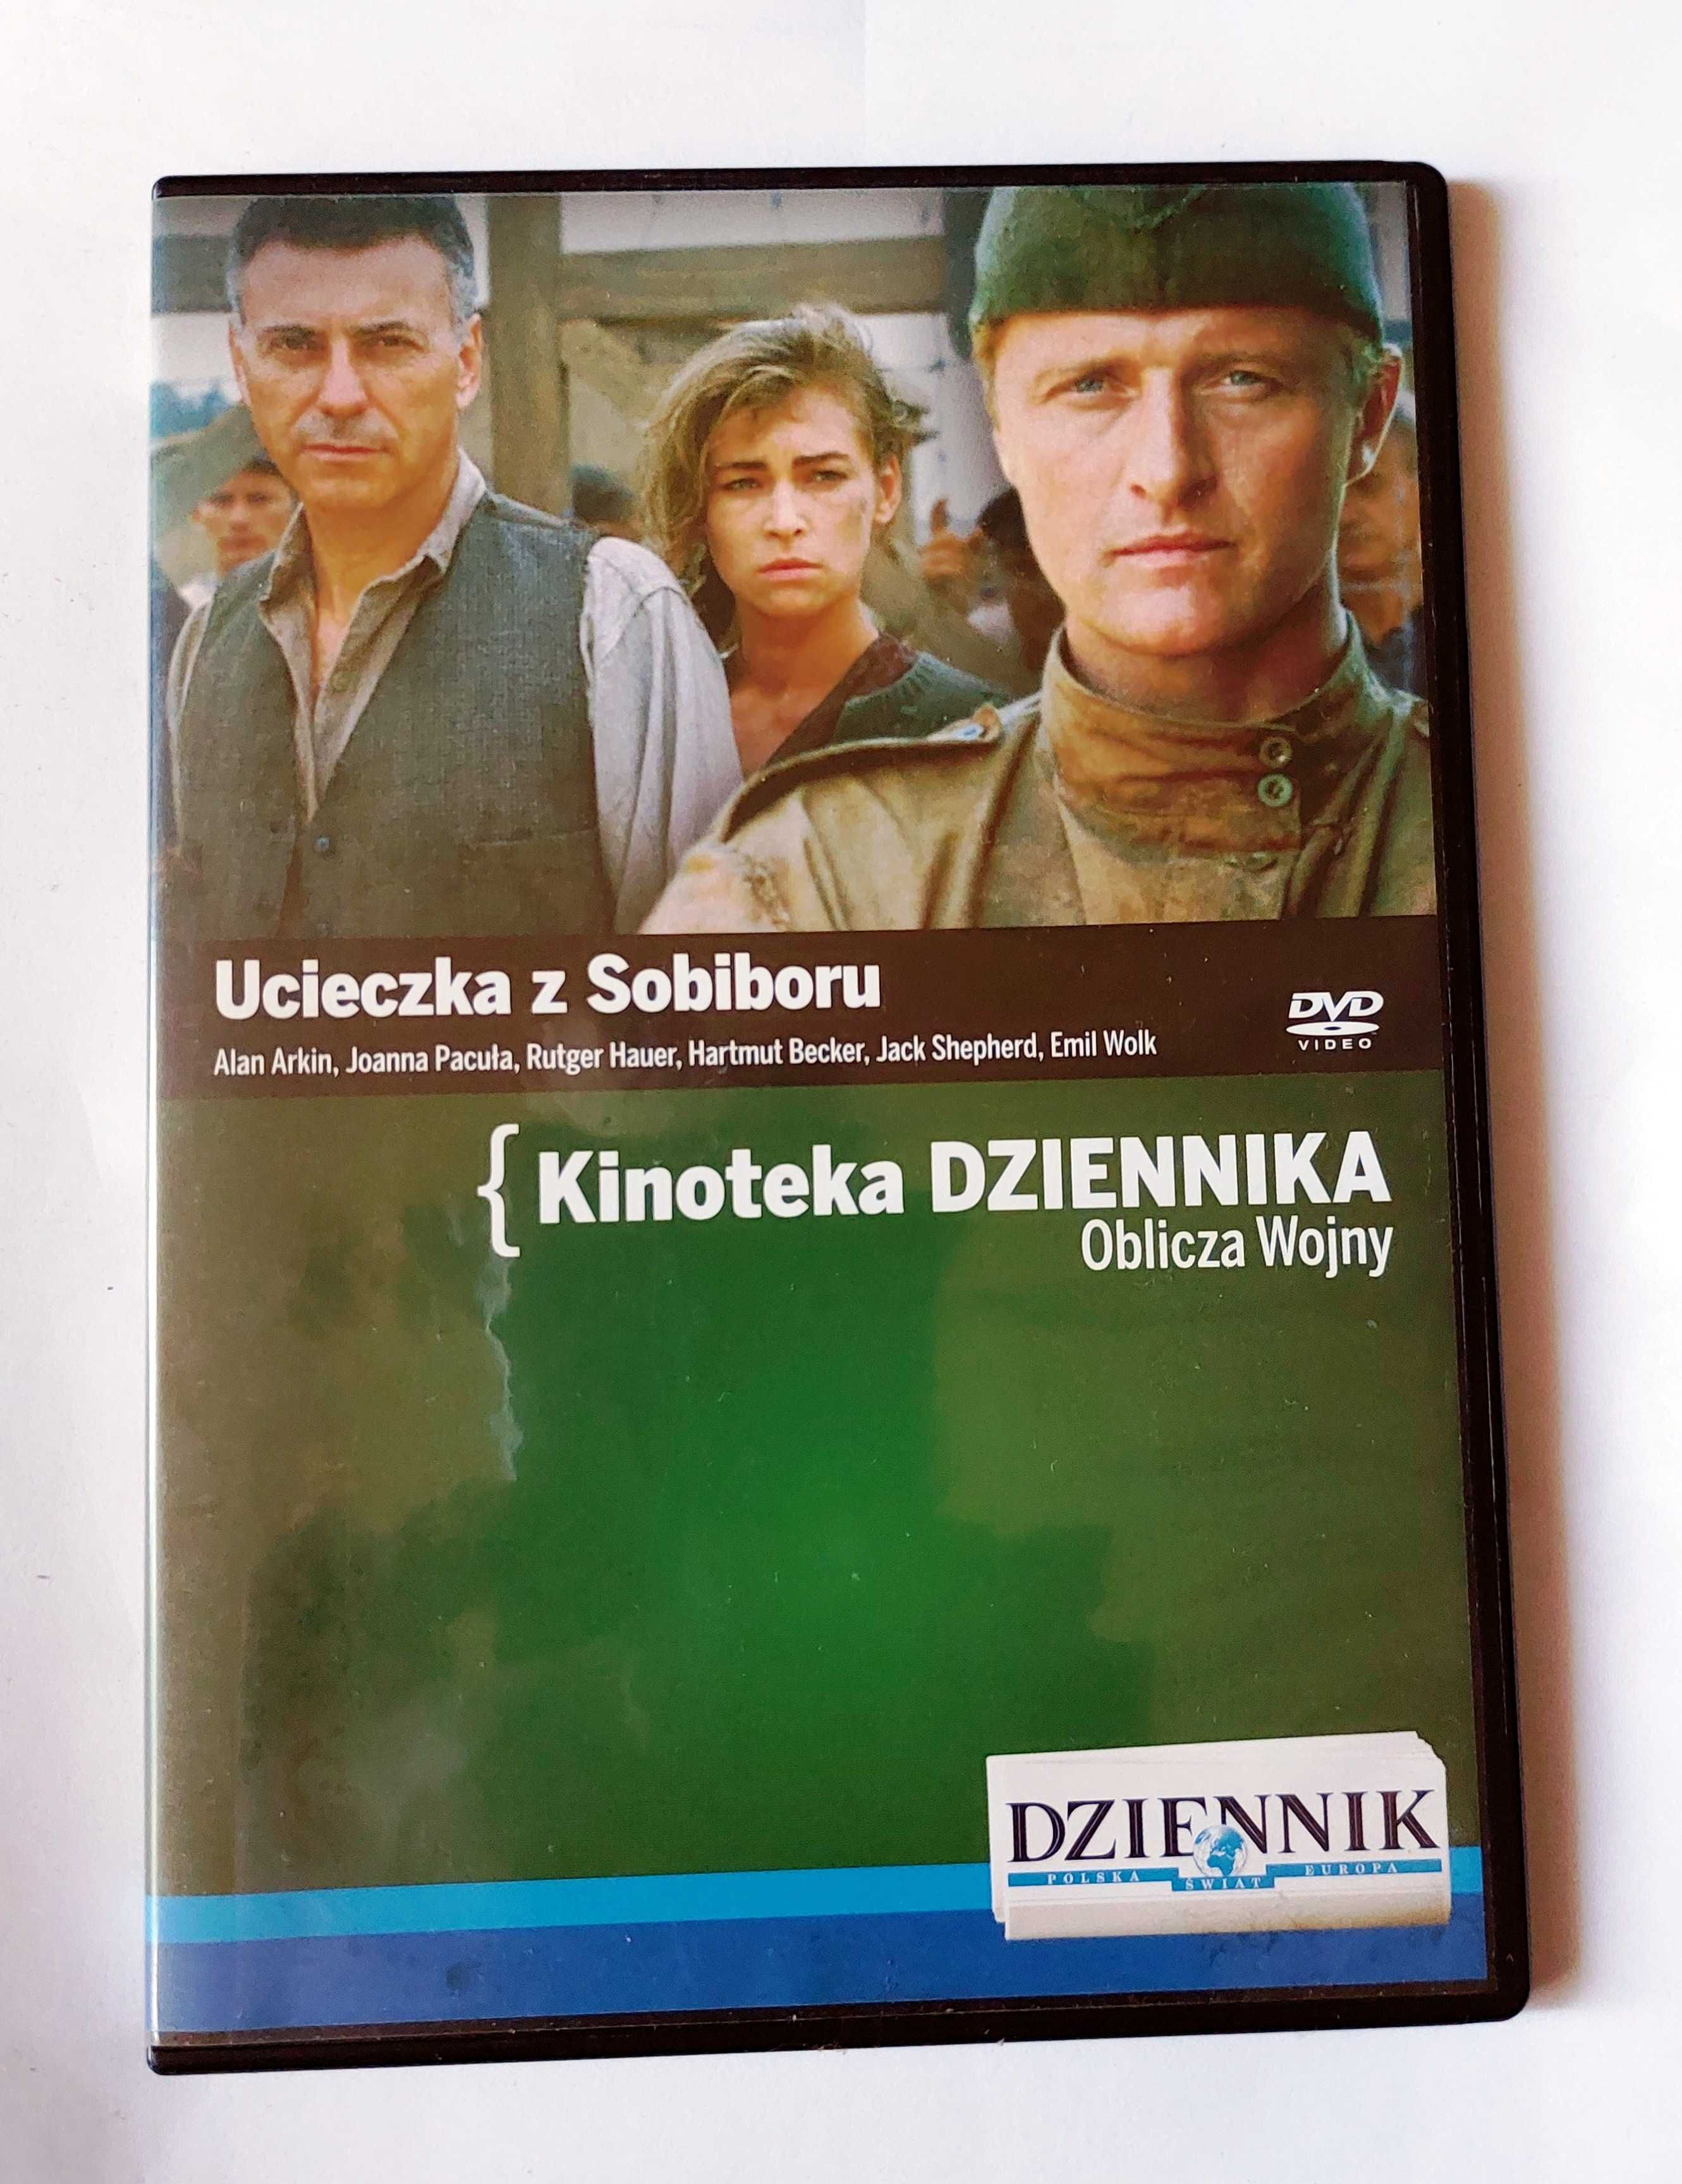 UCIECZKA Z SOBIBORU | film wojenny na DVD